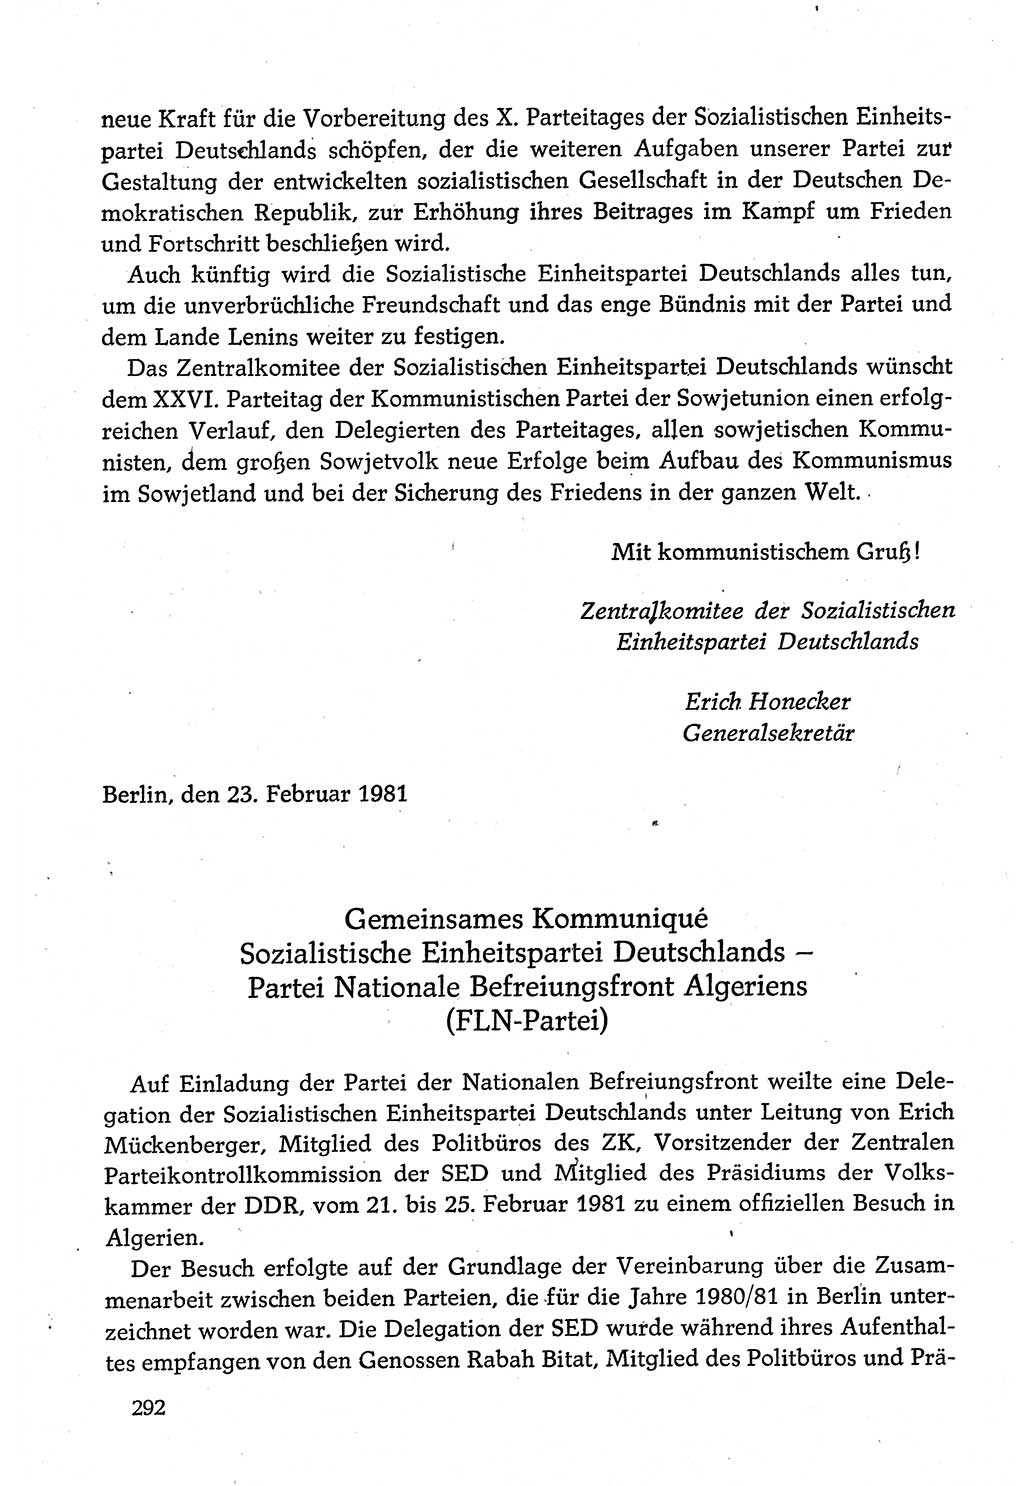 Dokumente der Sozialistischen Einheitspartei Deutschlands (SED) [Deutsche Demokratische Republik (DDR)] 1980-1981, Seite 292 (Dok. SED DDR 1980-1981, S. 292)